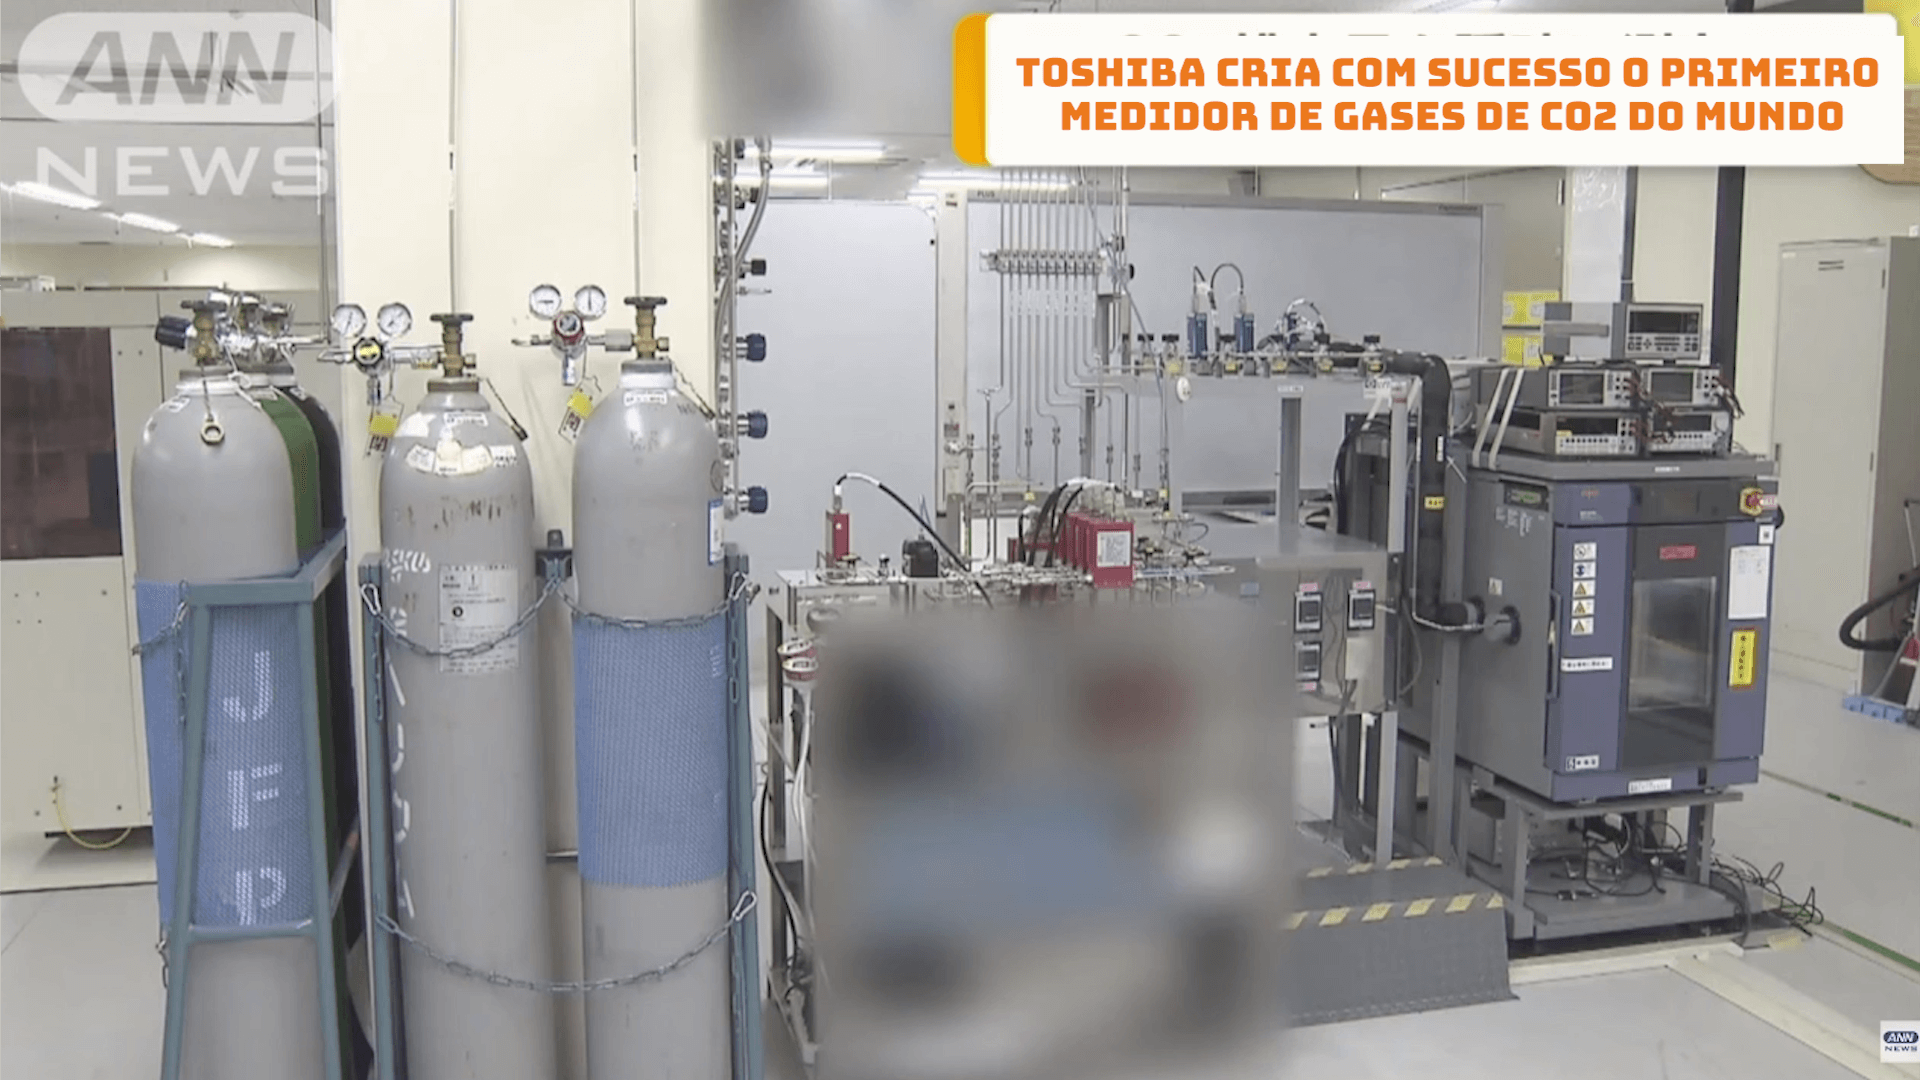 Toshiba cria com sucesso o primeiro medidor de gases CO2 do mundo